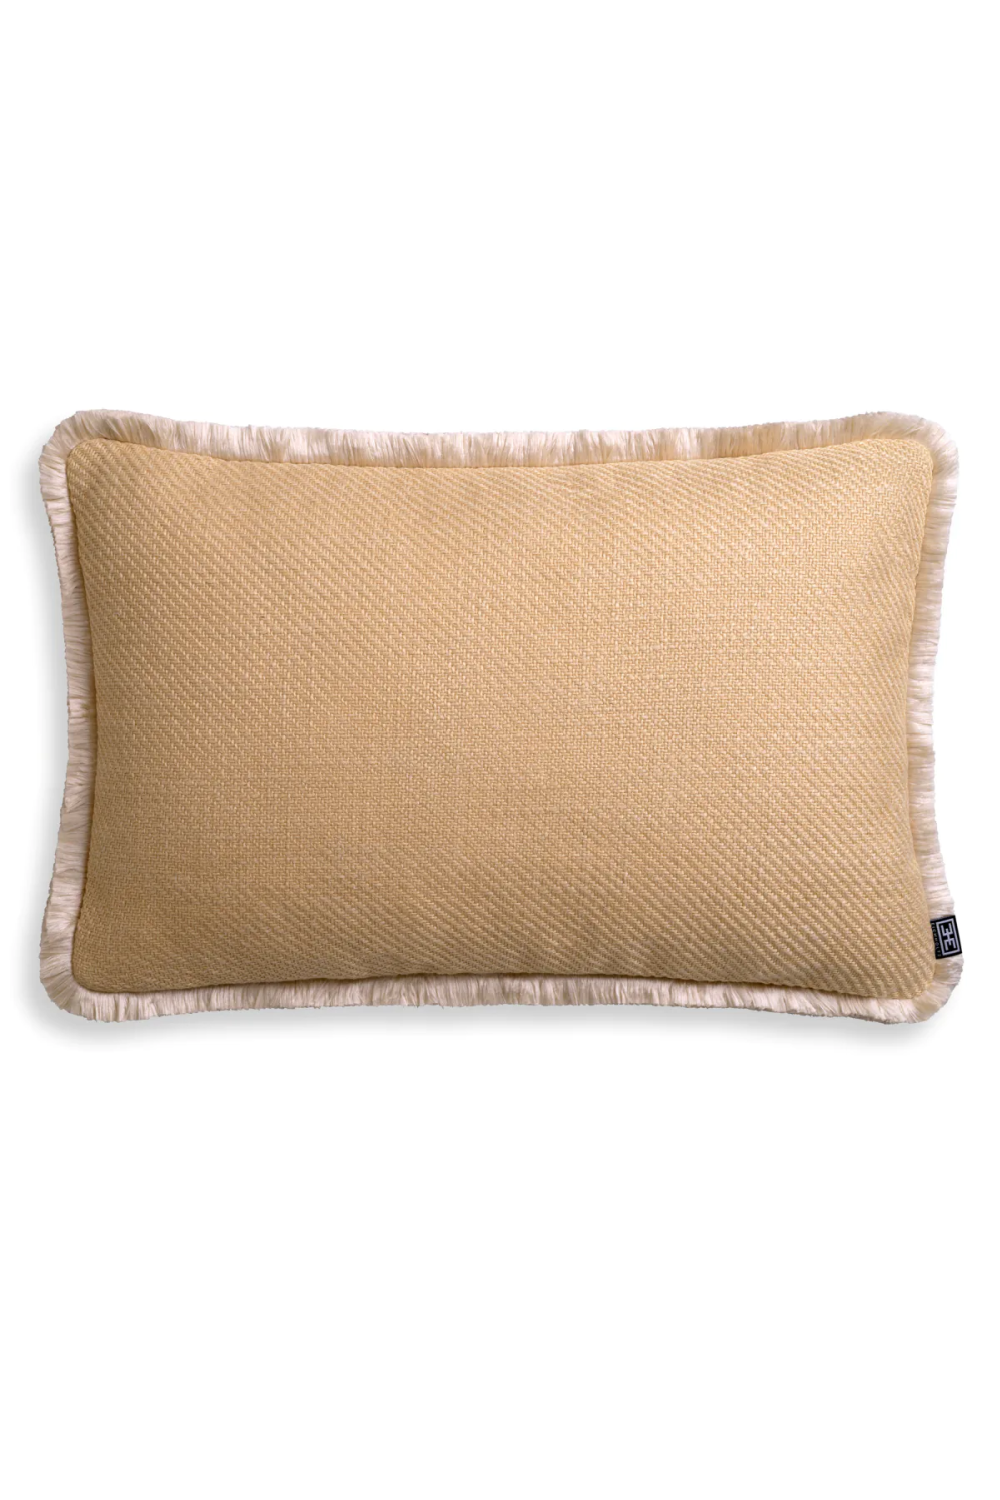 Fringed Modern Lumbar Pillow | Eichholtz Cancan | Oroa.com